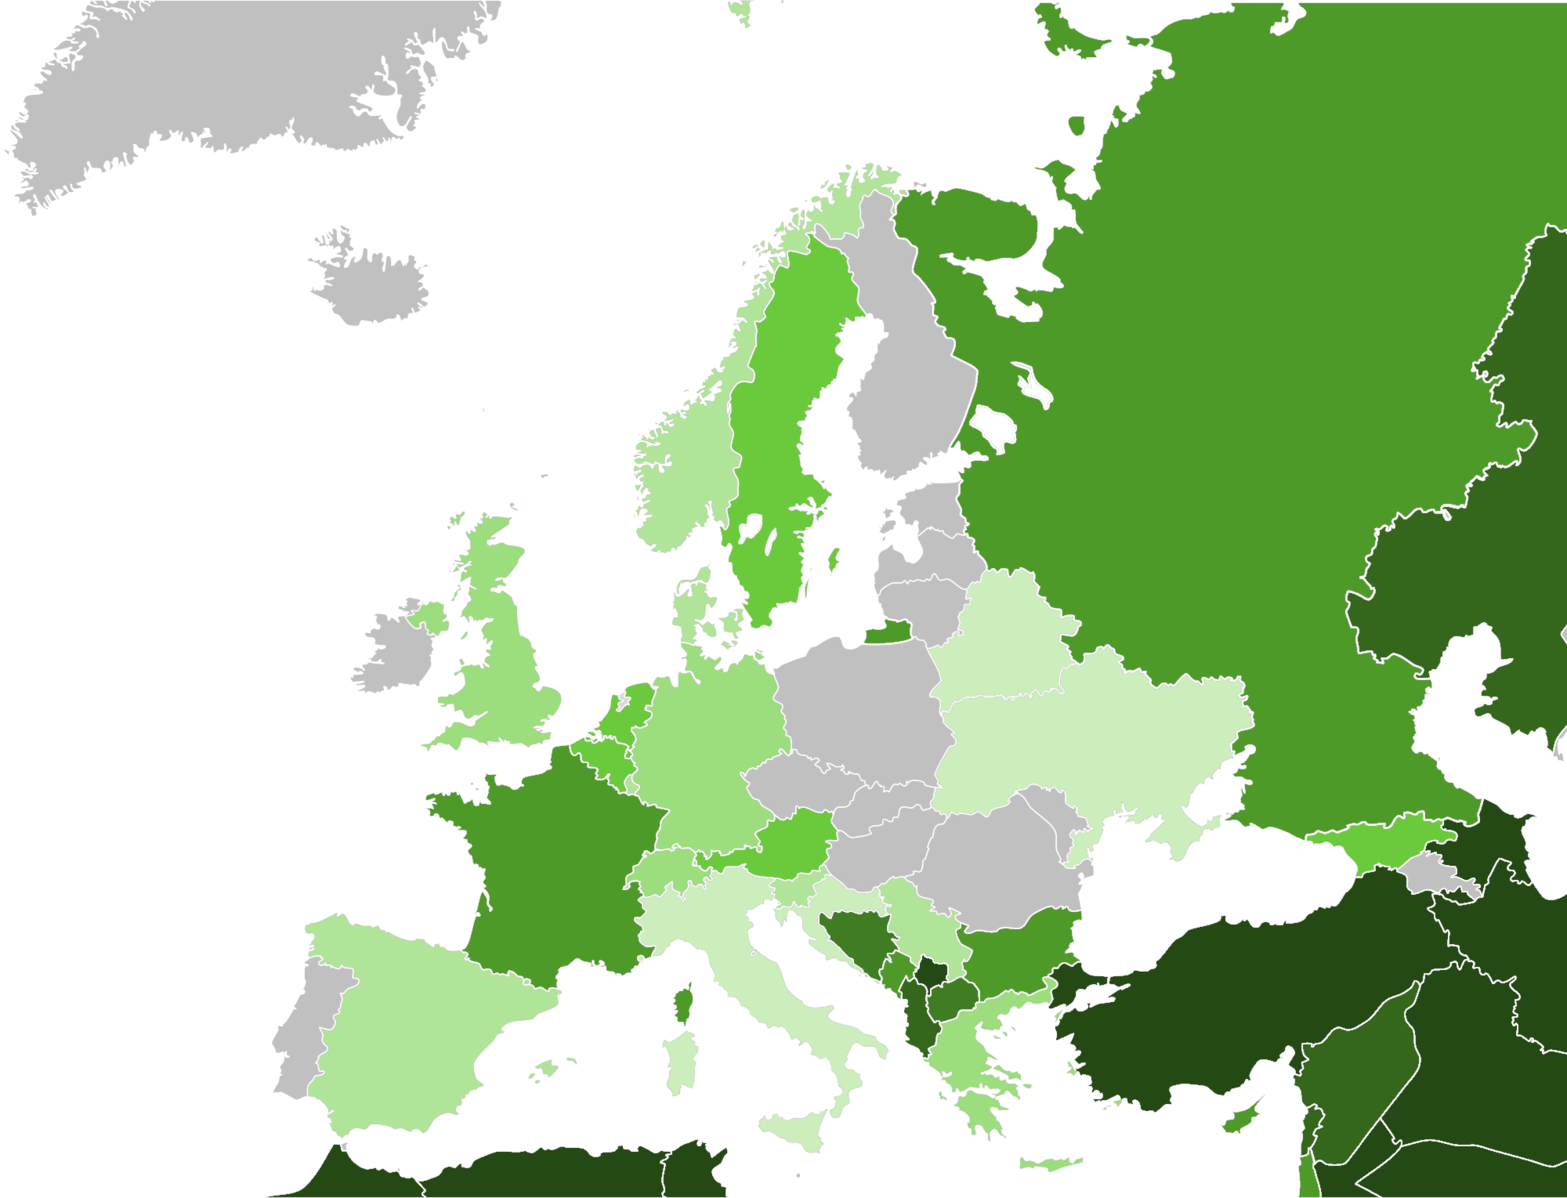 Europa und. Мусульмане в Европе карта. Карта мусульманства в Европе. Исламизация Европы карта.